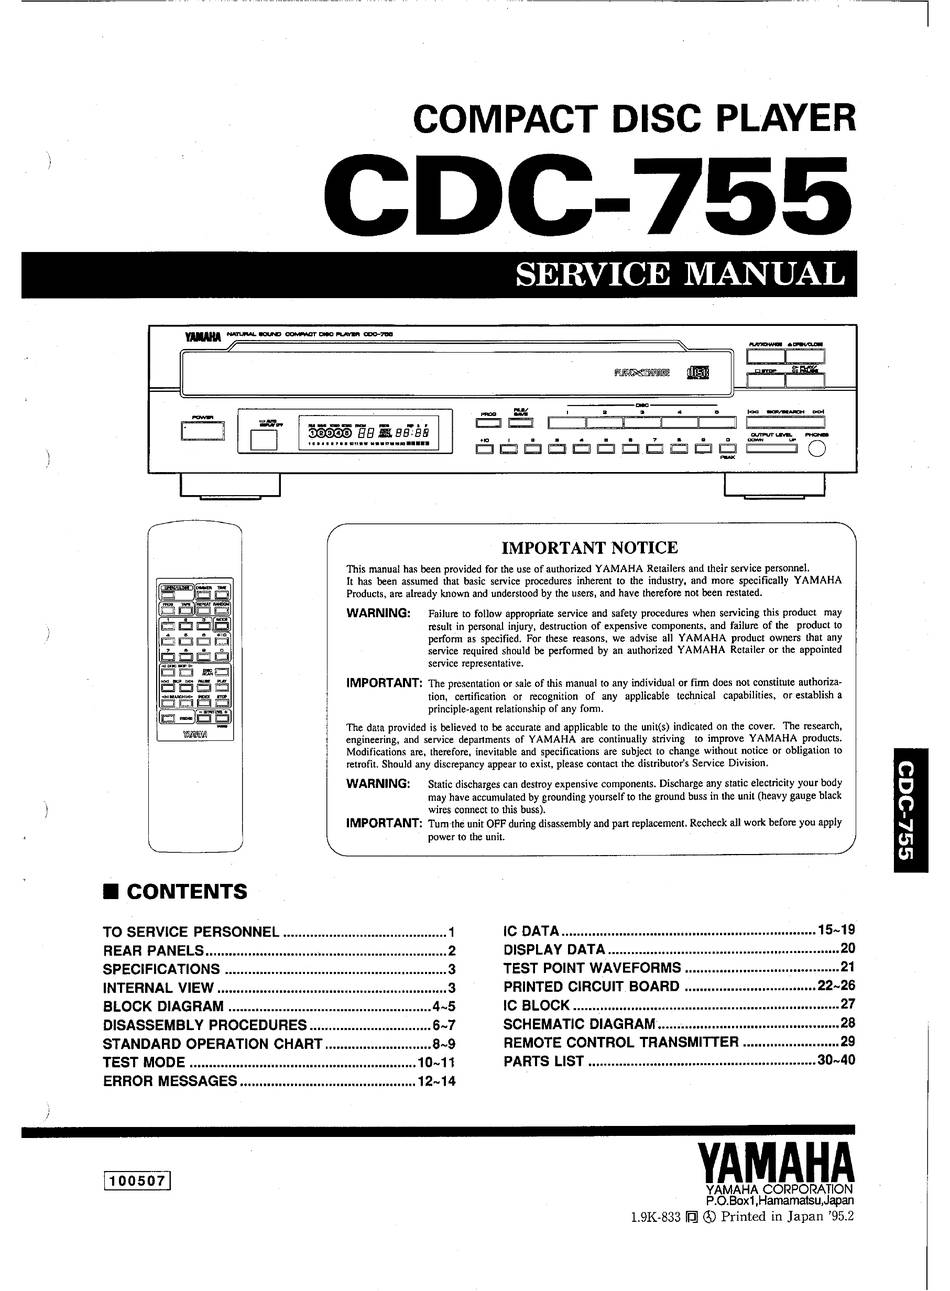 Yamaha CDC-755